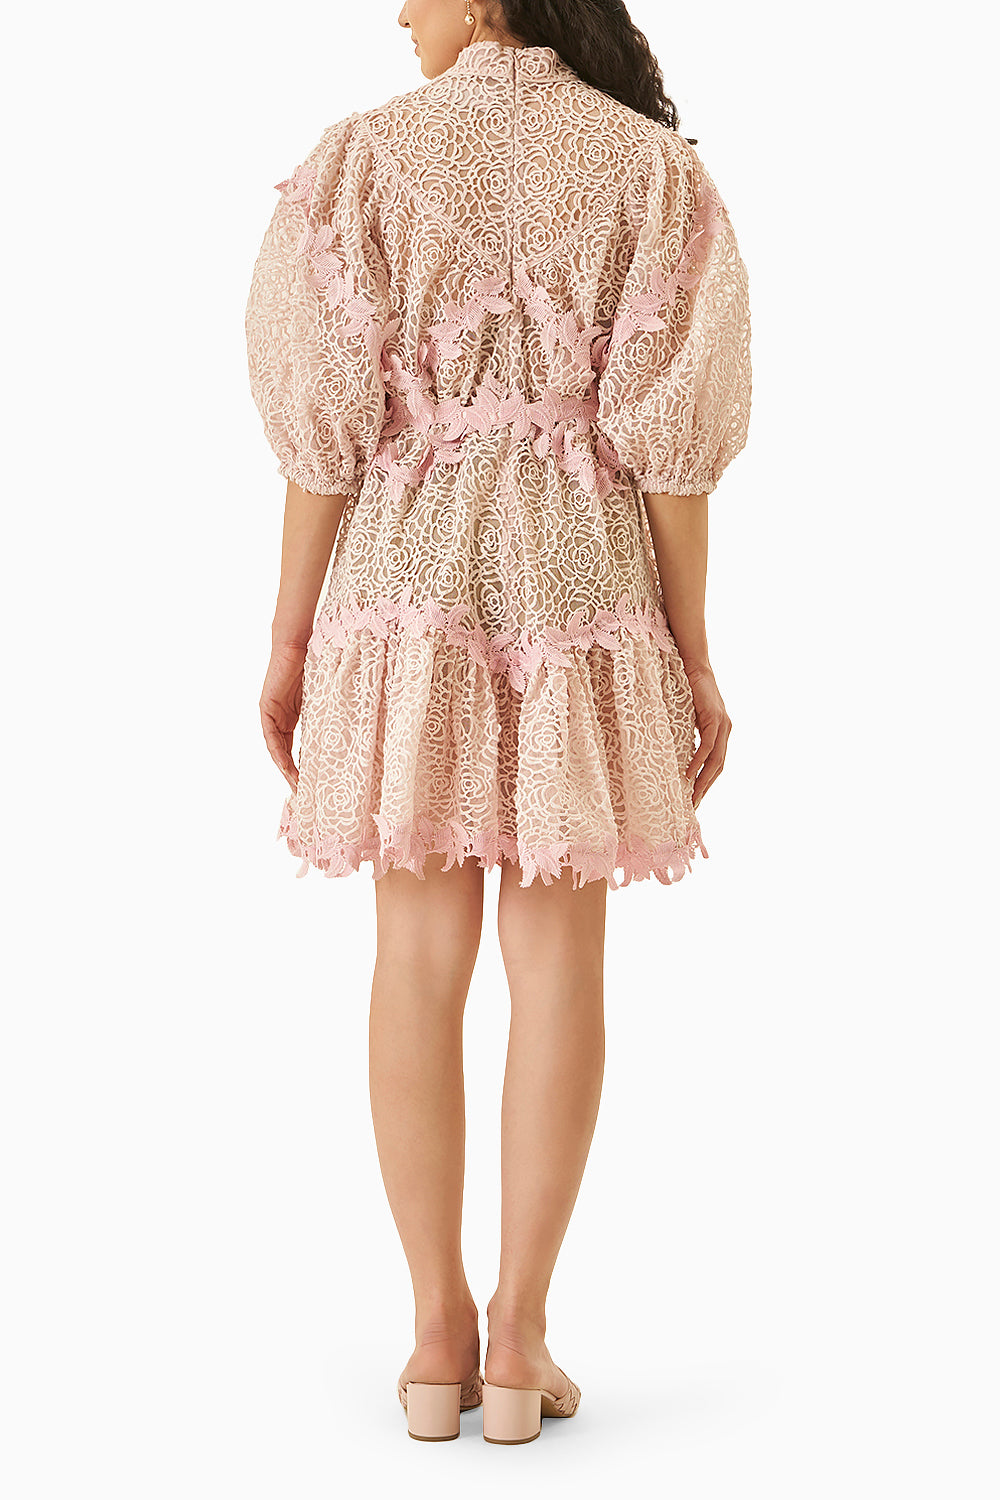 Myla Baby Pink Lace Dress